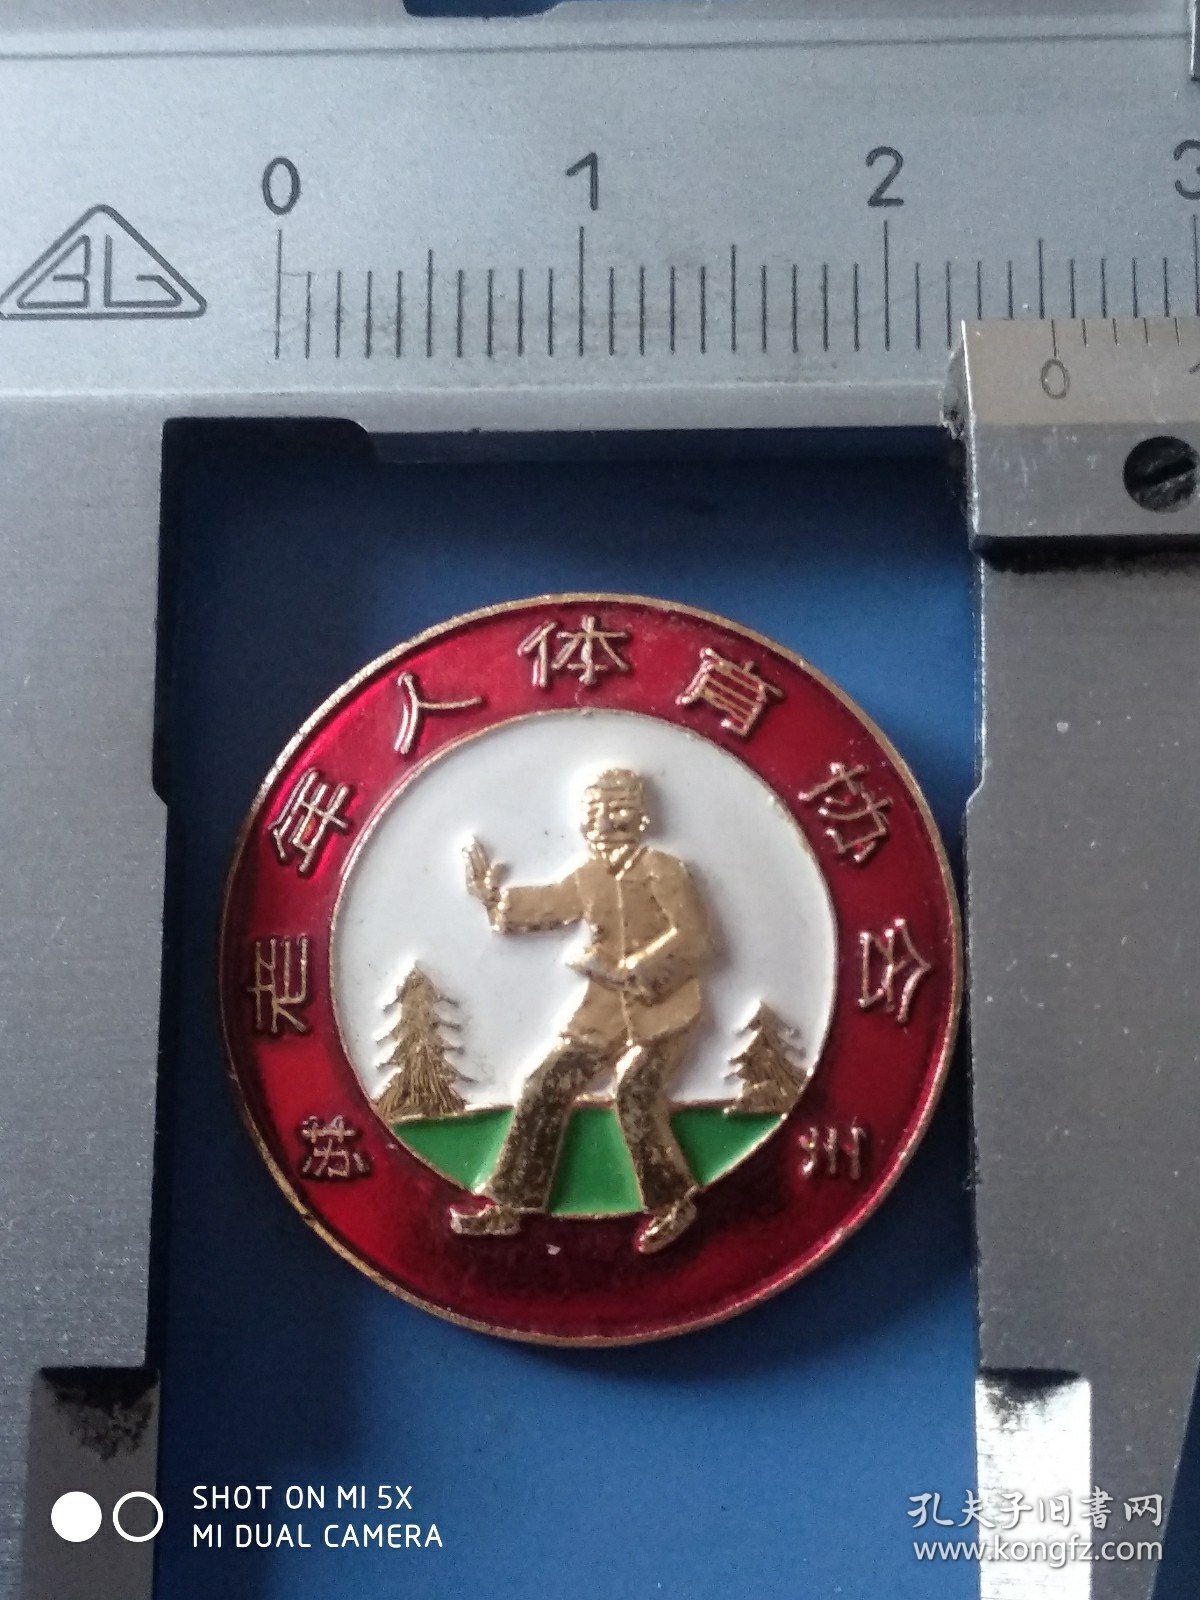 苏州老年人体肓协会纪念章。直径2.4厘米。